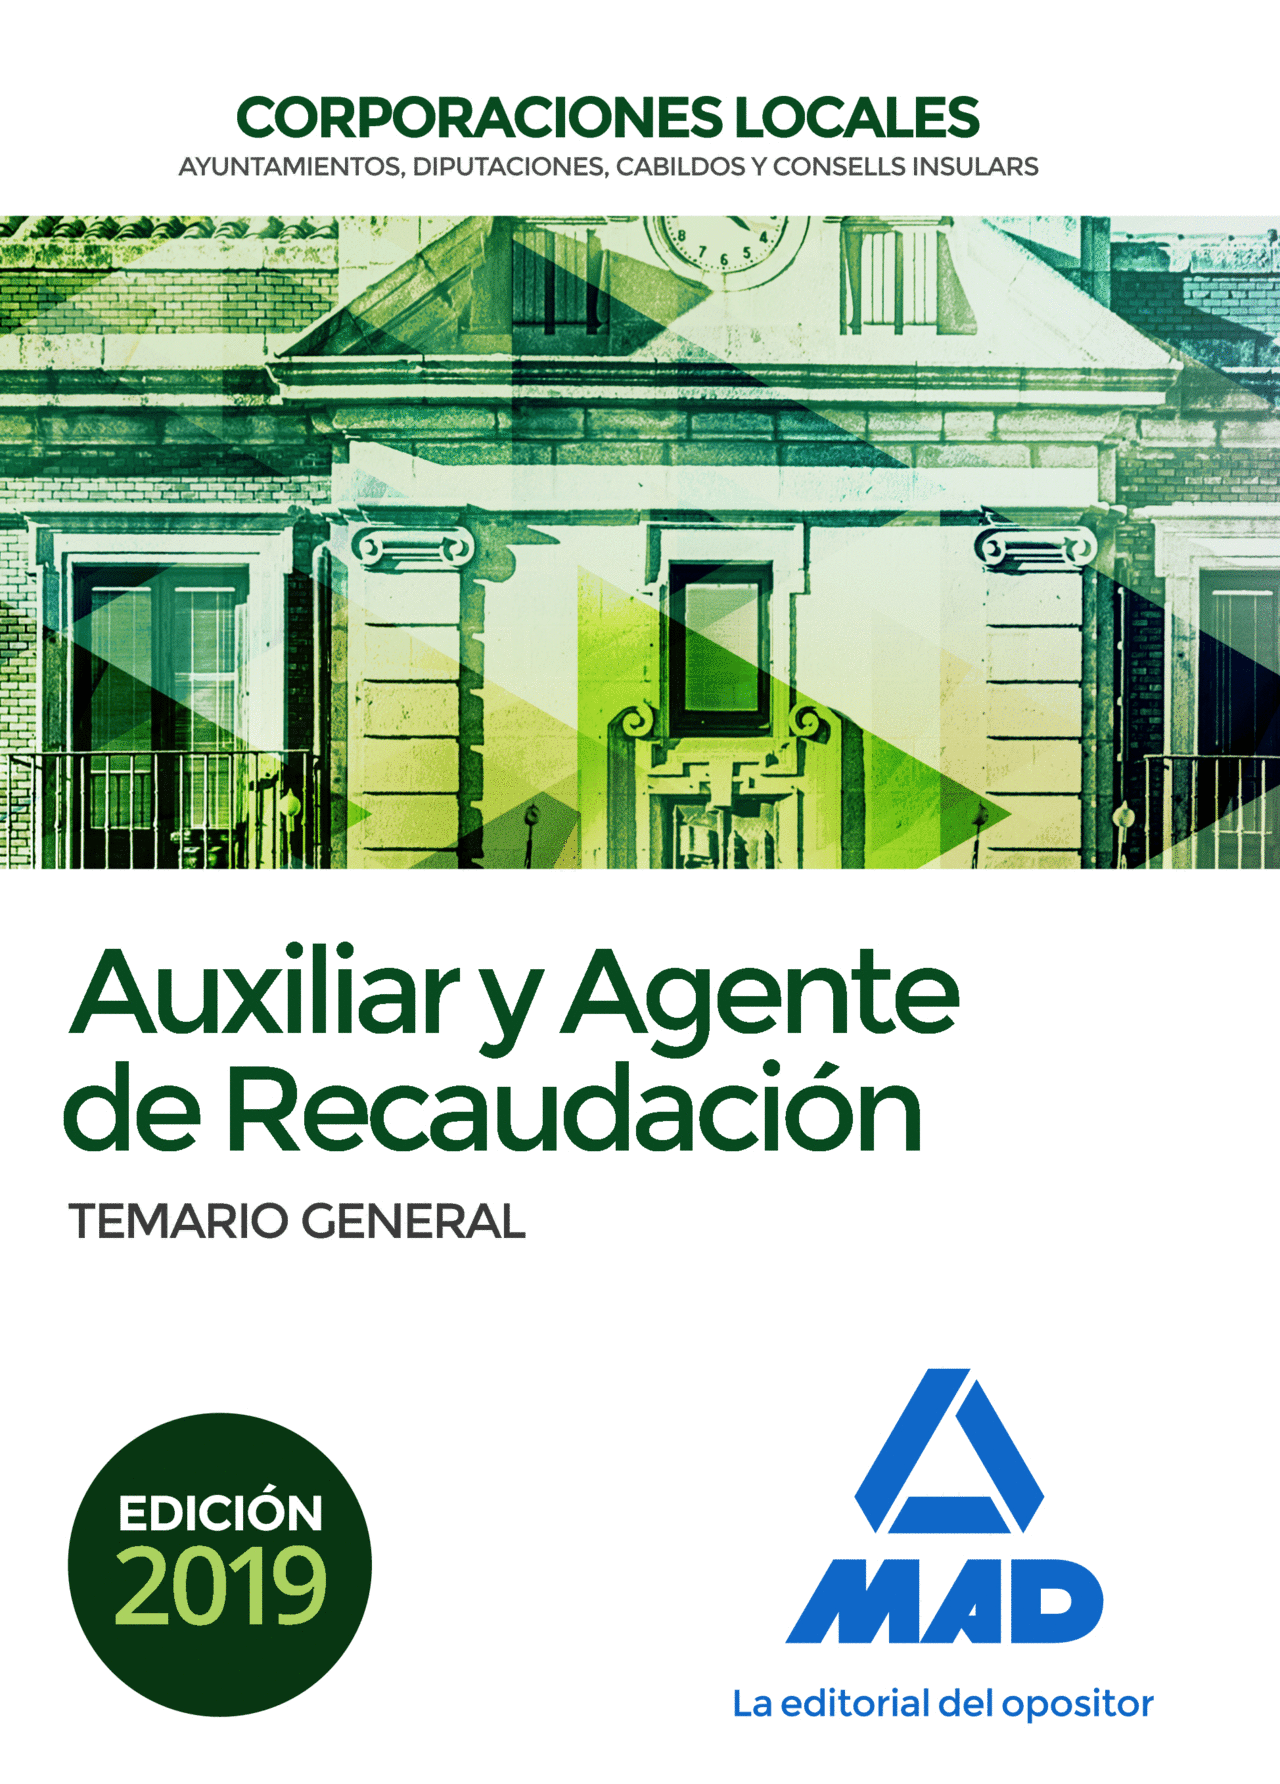 TEMARIO GENERAL AUXILIAR Y AGENTE DE RECAUDACIÓN